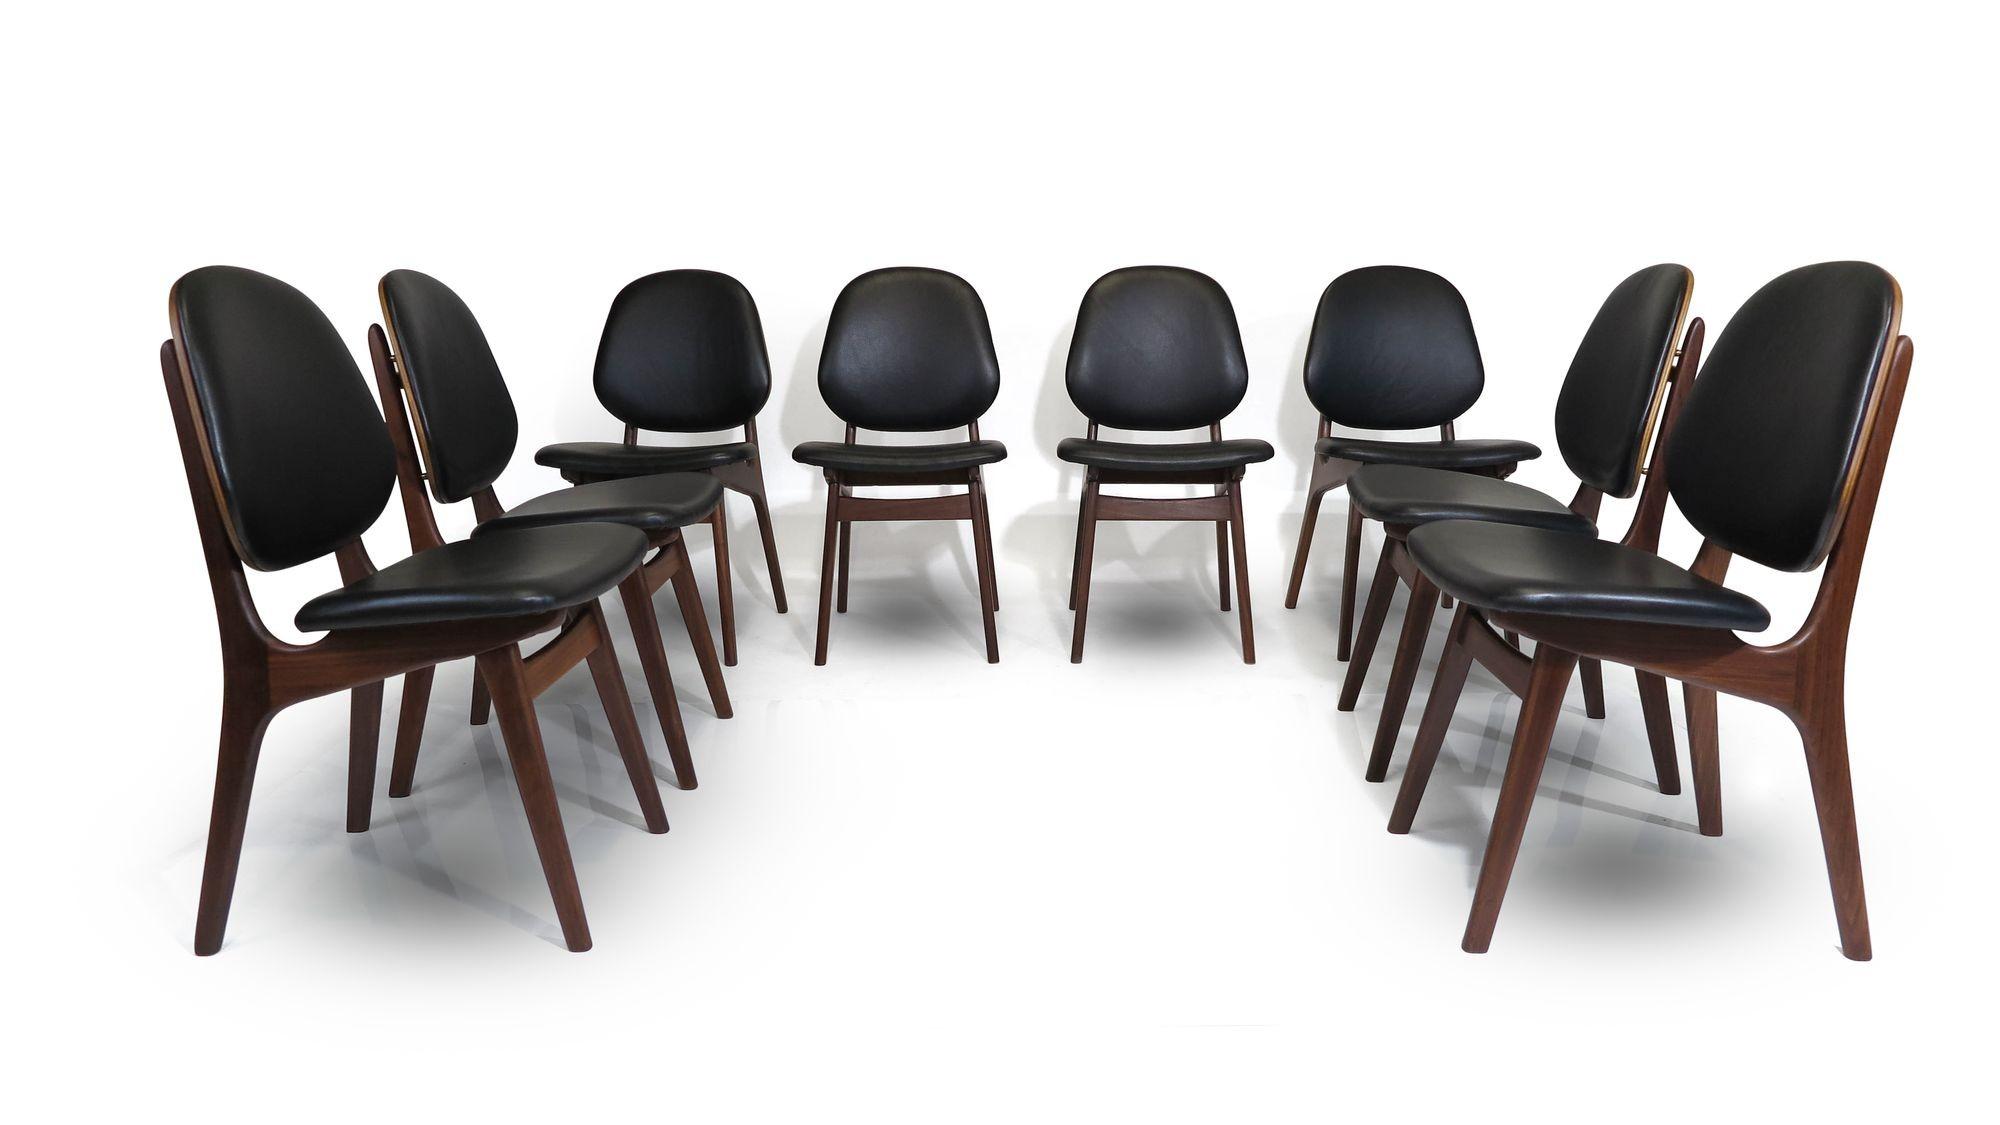 Ensemble de huit chaises de salle à manger du milieu du siècle conçues par Arne Hovmand Olsen, modèle 75, vers 1955 Danemark. Les chaises sont fabriquées à partir de cadres en teck massif, avec des dossiers rembourrés et une menuiserie en laiton